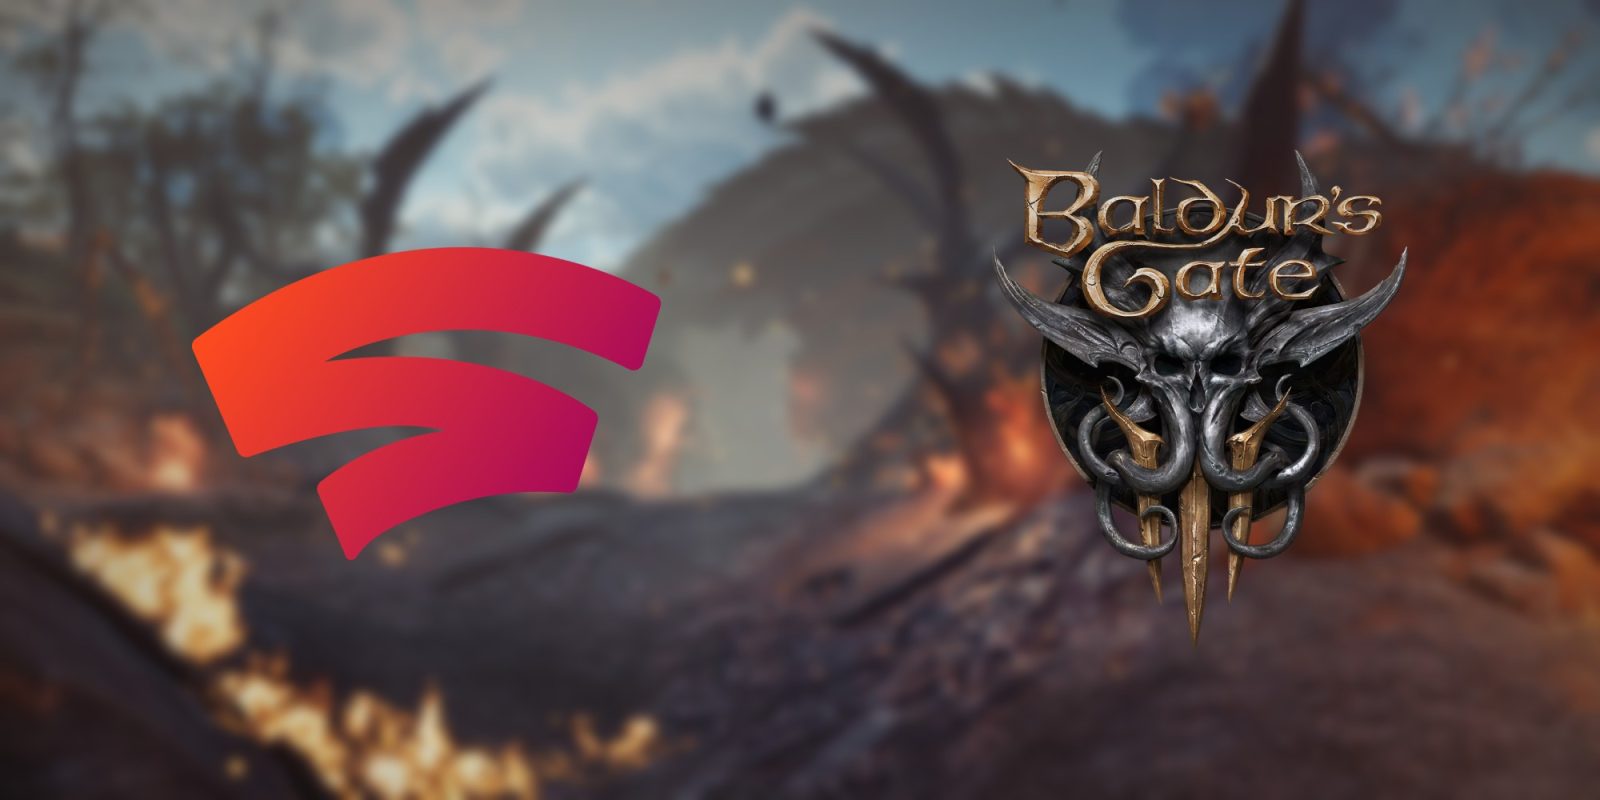 Baldur's Gate 3 for Google Stadia